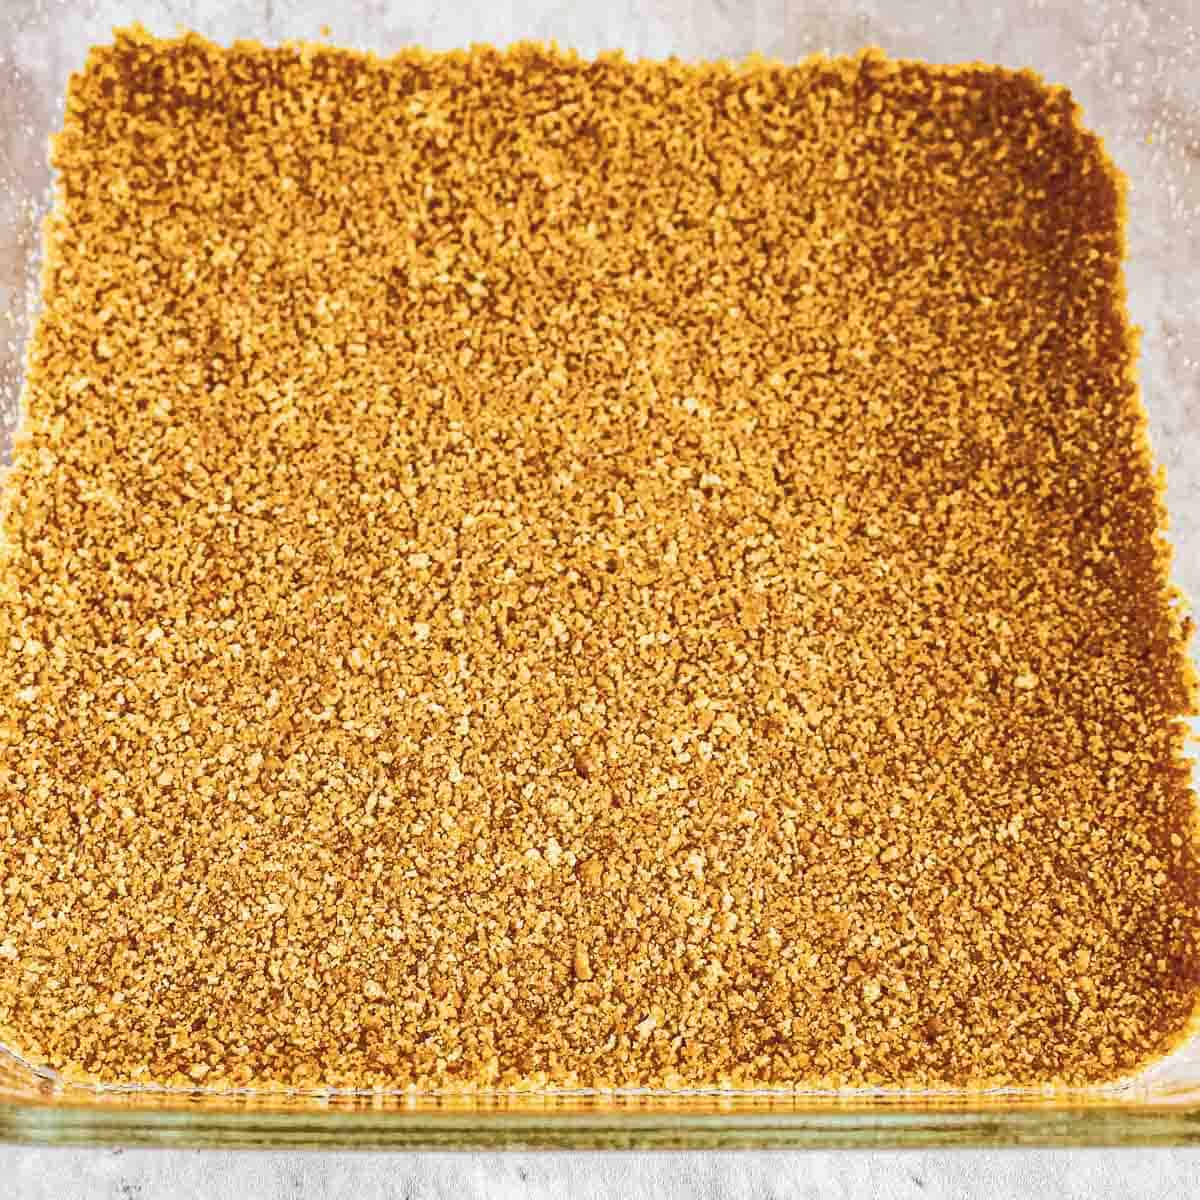 graham cracker crust in a brownie pan.